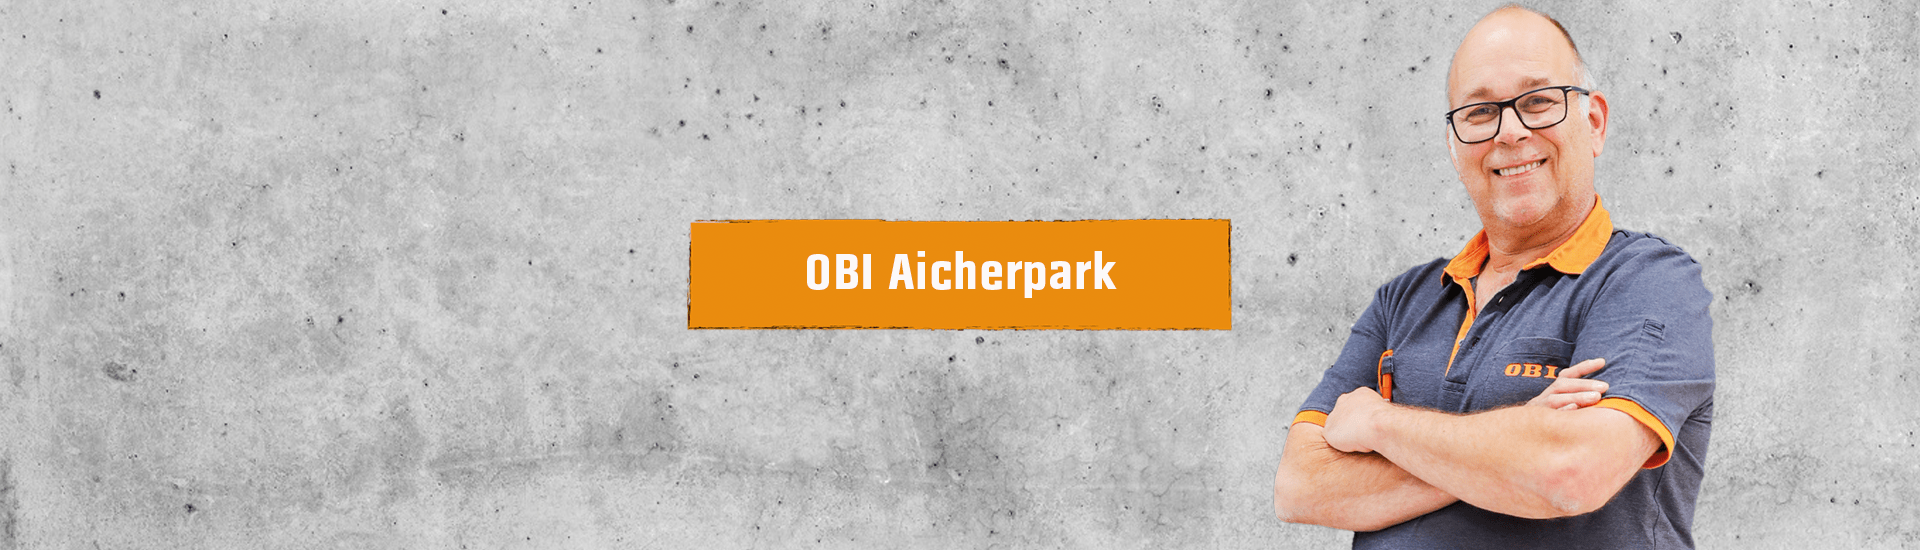 OBI Aicherpark